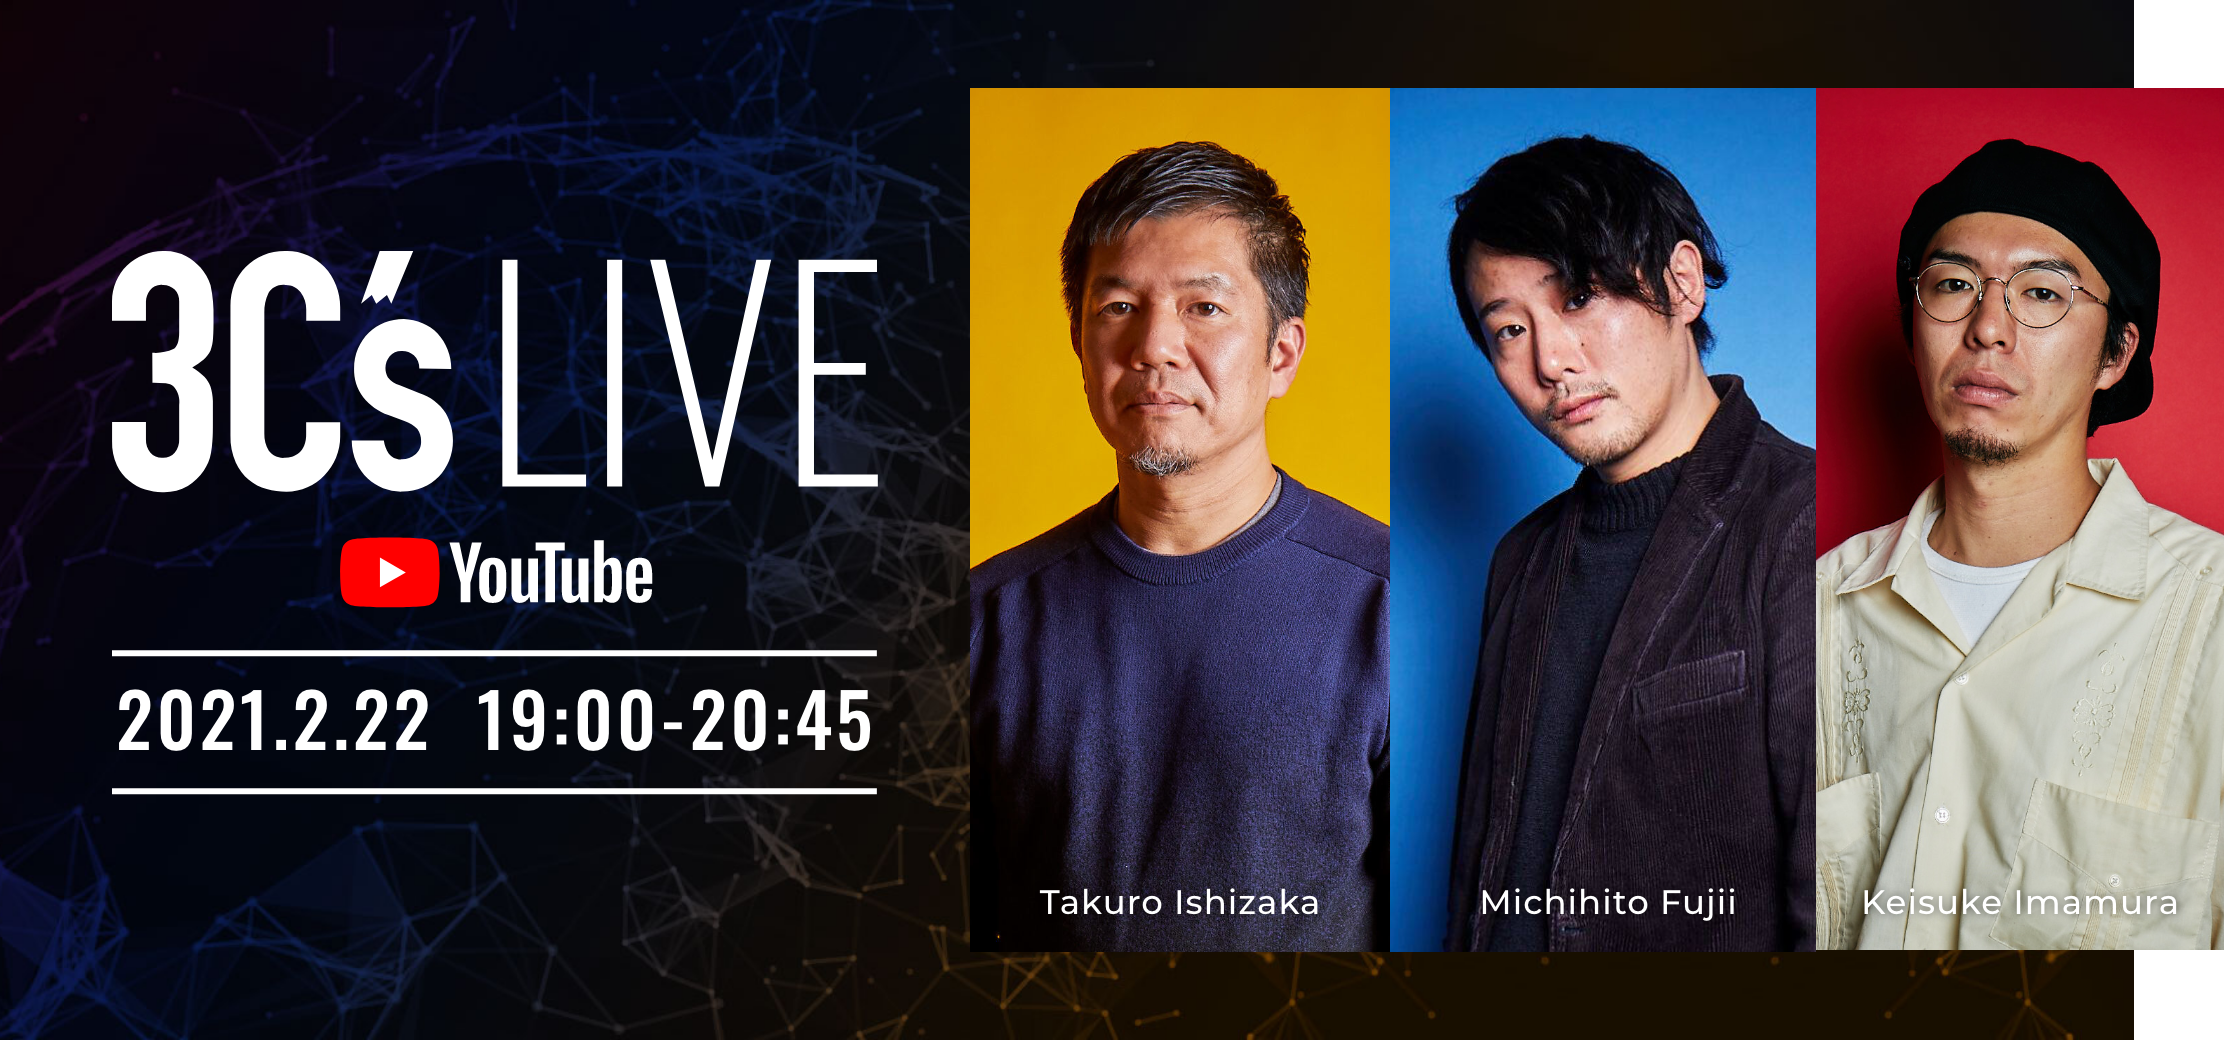 3C’S LIVE 2021.2.22 19:00-20:45